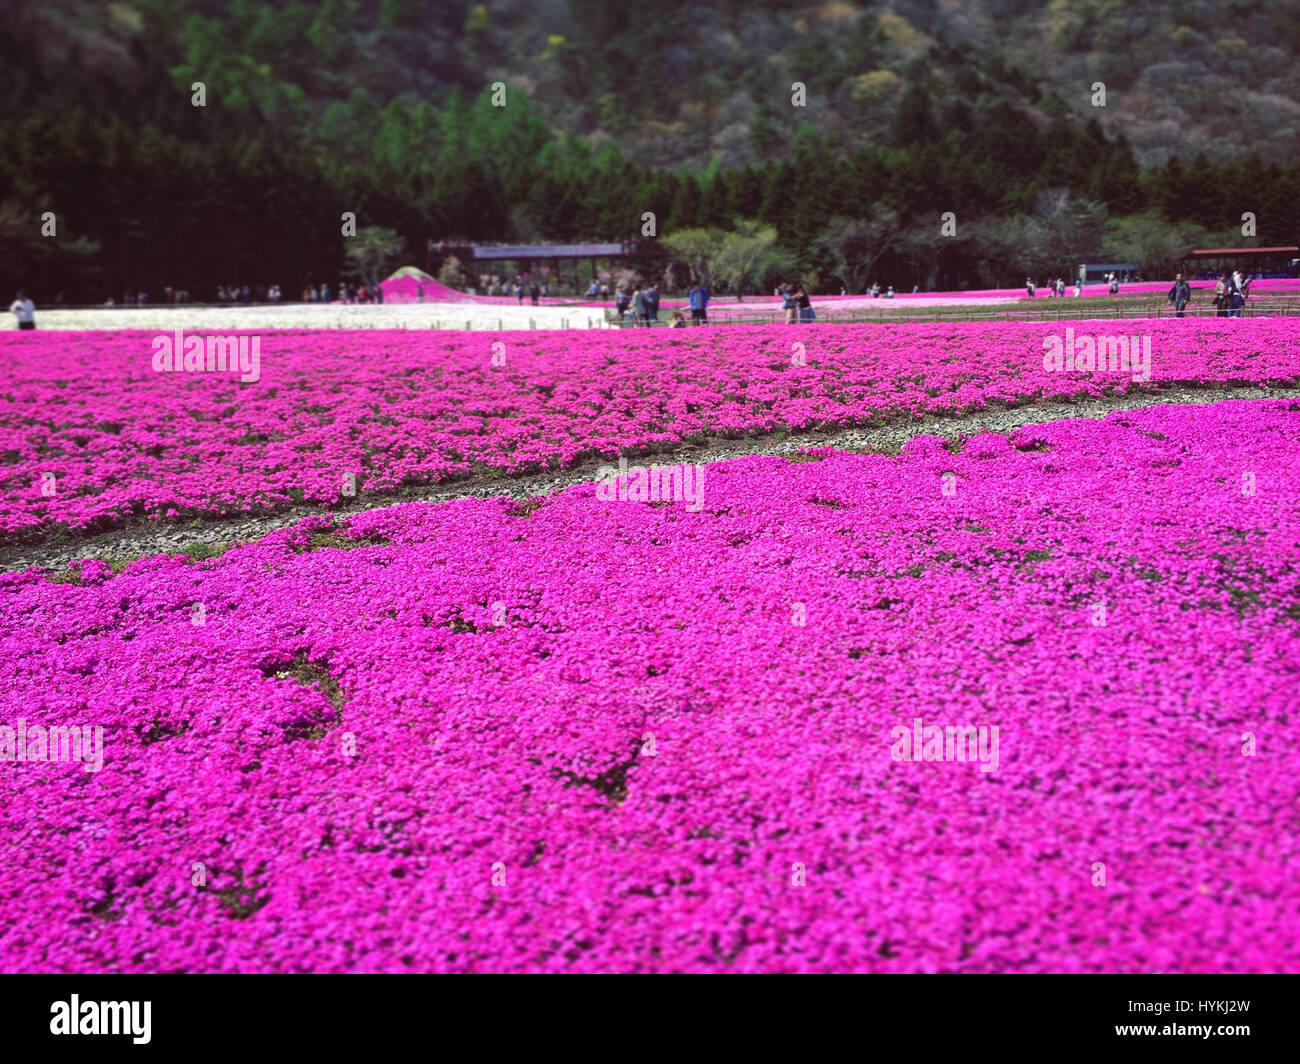 Insel HONSHU, JAPAN: MOUNT Fuji wurde erfasst sah aus wie eine reale Landschaftsmalerei, umgeben von schönen Blüte. Bilder zeigen rosa lila und weißen Blüten blühen auf spektakuläre Weise vor dem Hintergrund des majestätischen Mount Fuji. Beamter/Beamtin Hanson Mao (36) verbrachten fünf Tage in Japan diese atemberaubende Frühling Szenen im Shibazkura Garten am Fuße des Mount Fuji auf der Insel Honshu, Japan einzufangen. Stockfoto